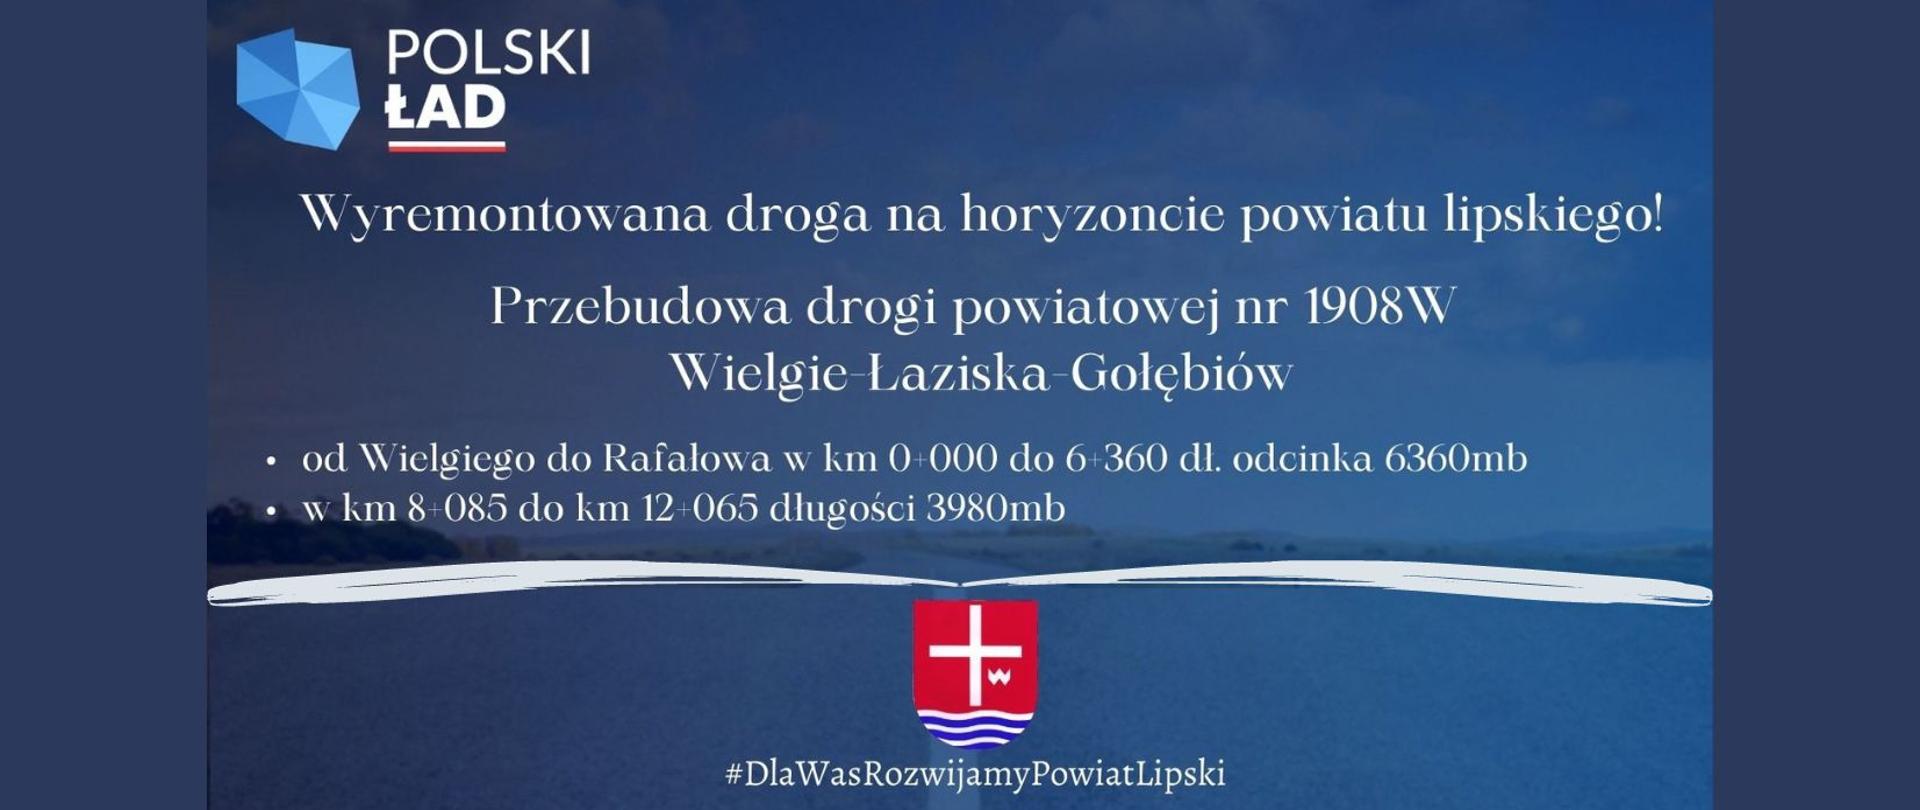 Grafika z tekstem, o długości odcinka wyremontowanej drogi z herbem powiatu i logotypem Polskiego ładu na granatowym tle.